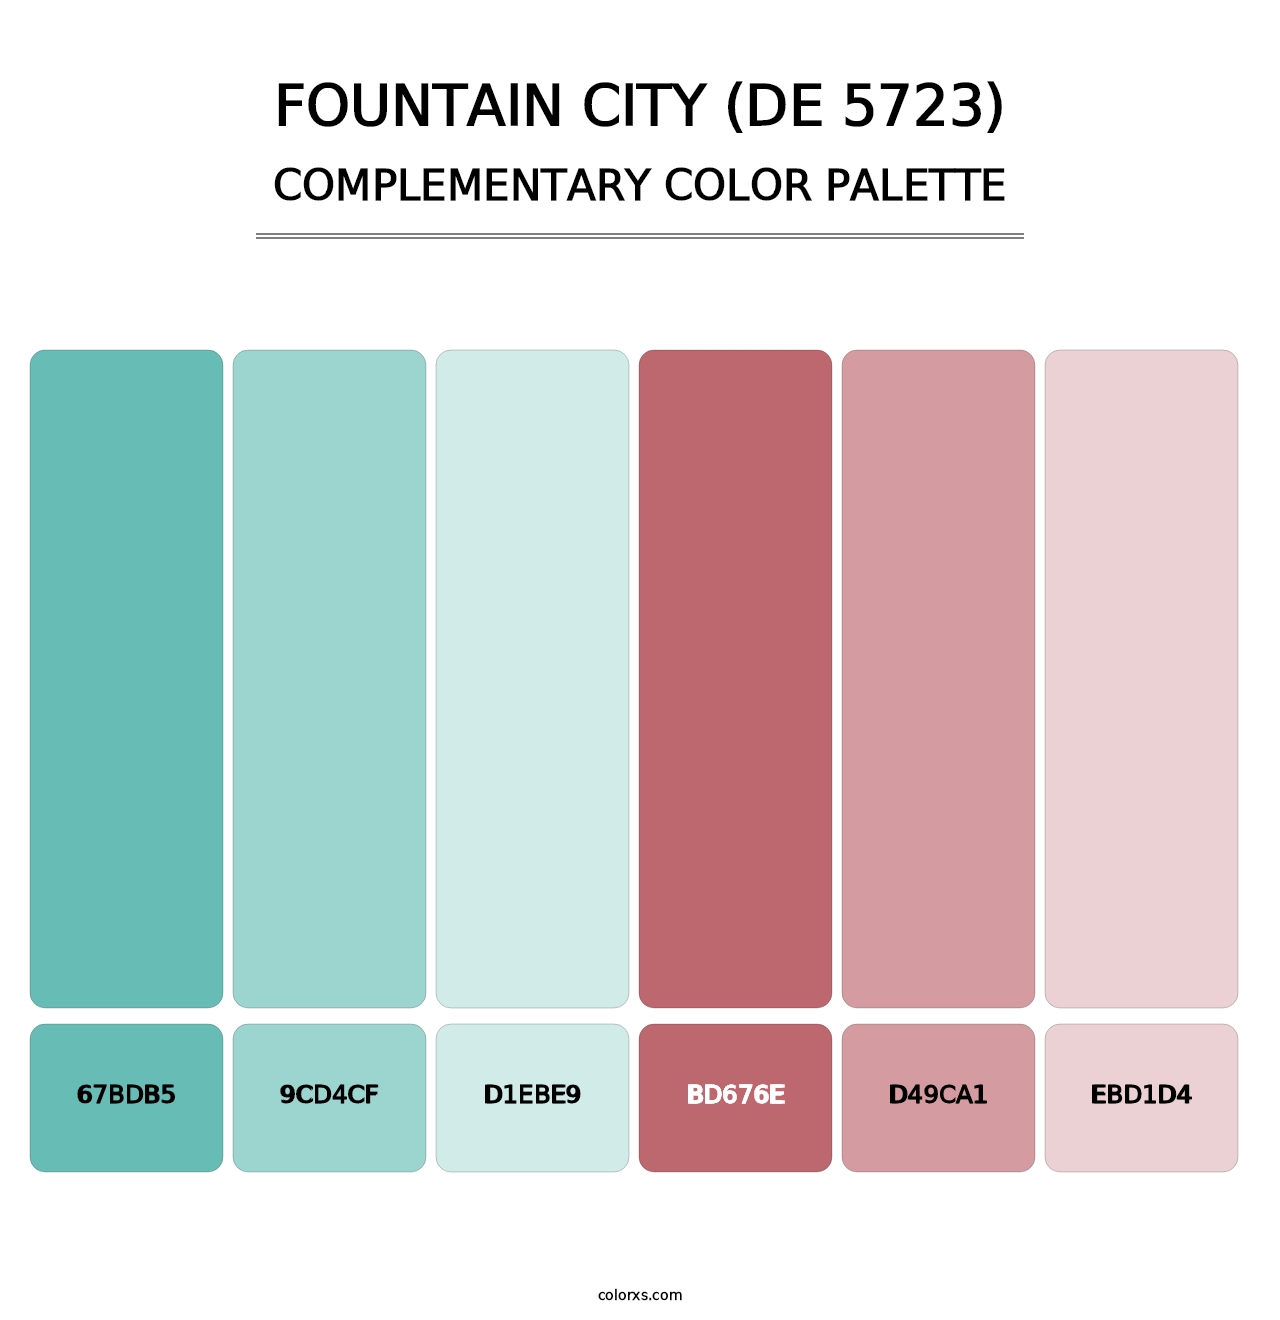 Fountain City (DE 5723) - Complementary Color Palette